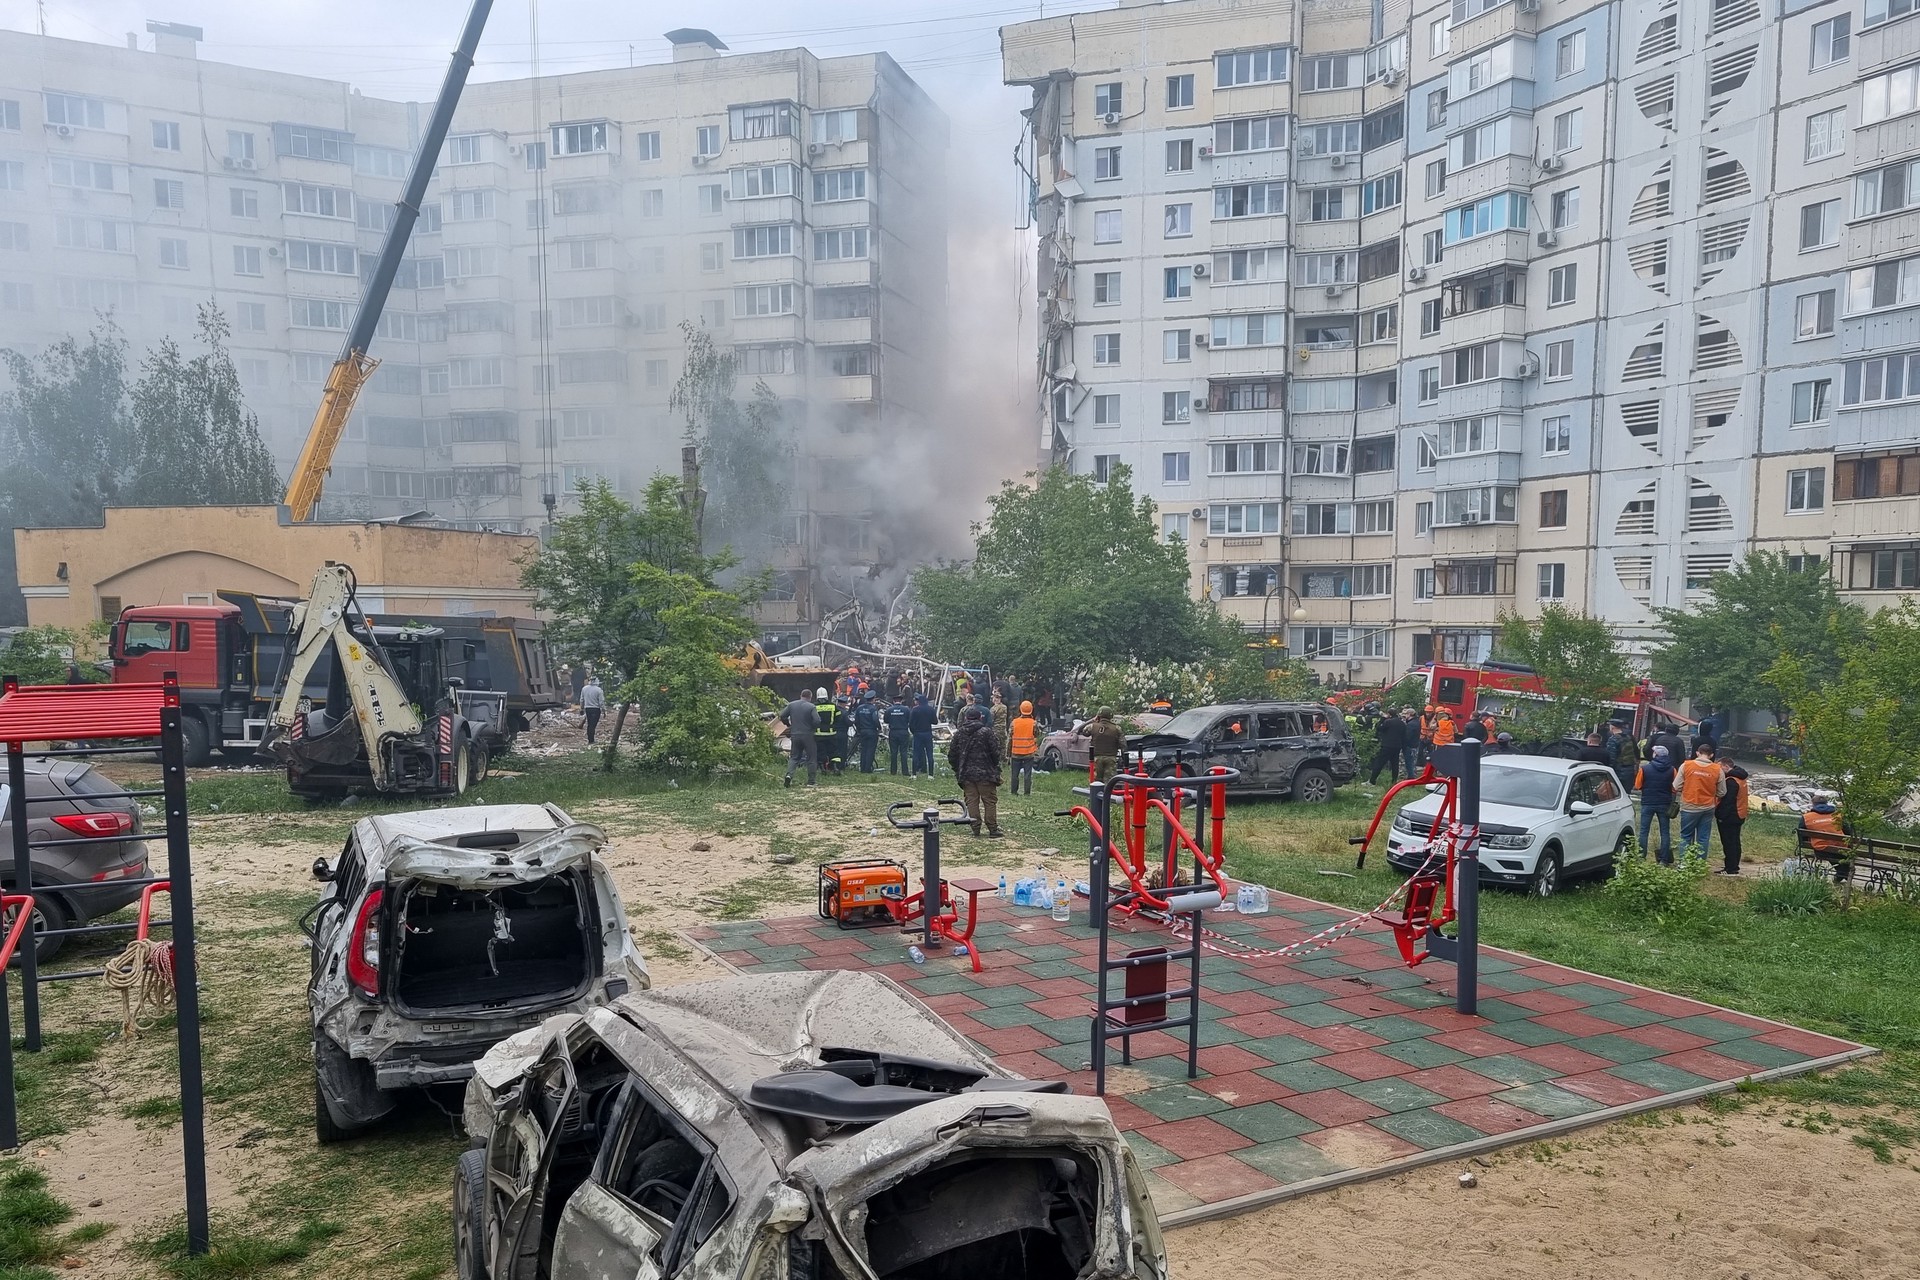 Гладков сообщил, что в результате обрушения дома в Белгороде 11 человек находятся в медучреждениях